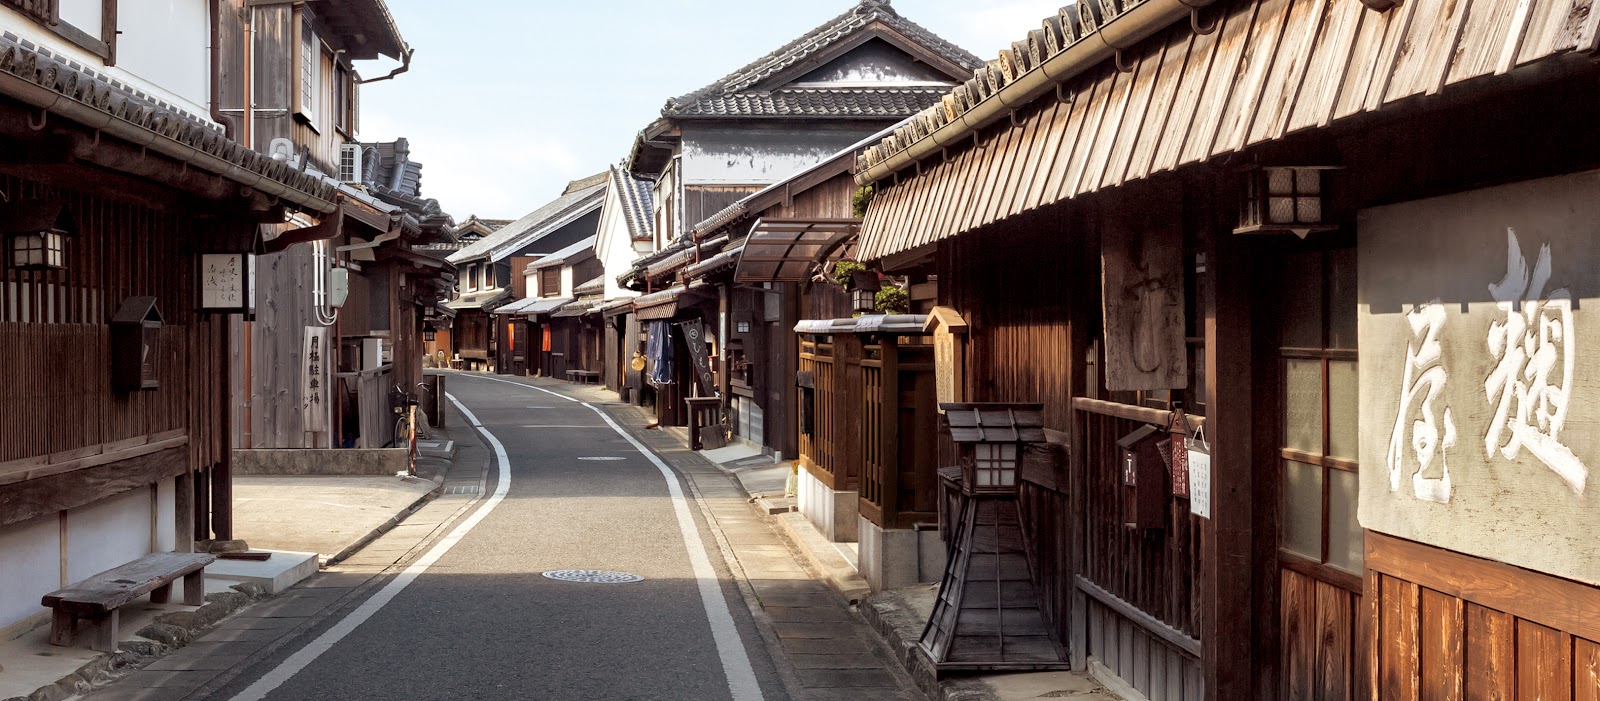 Calle de Yuasa, edificios antiguos del Edo